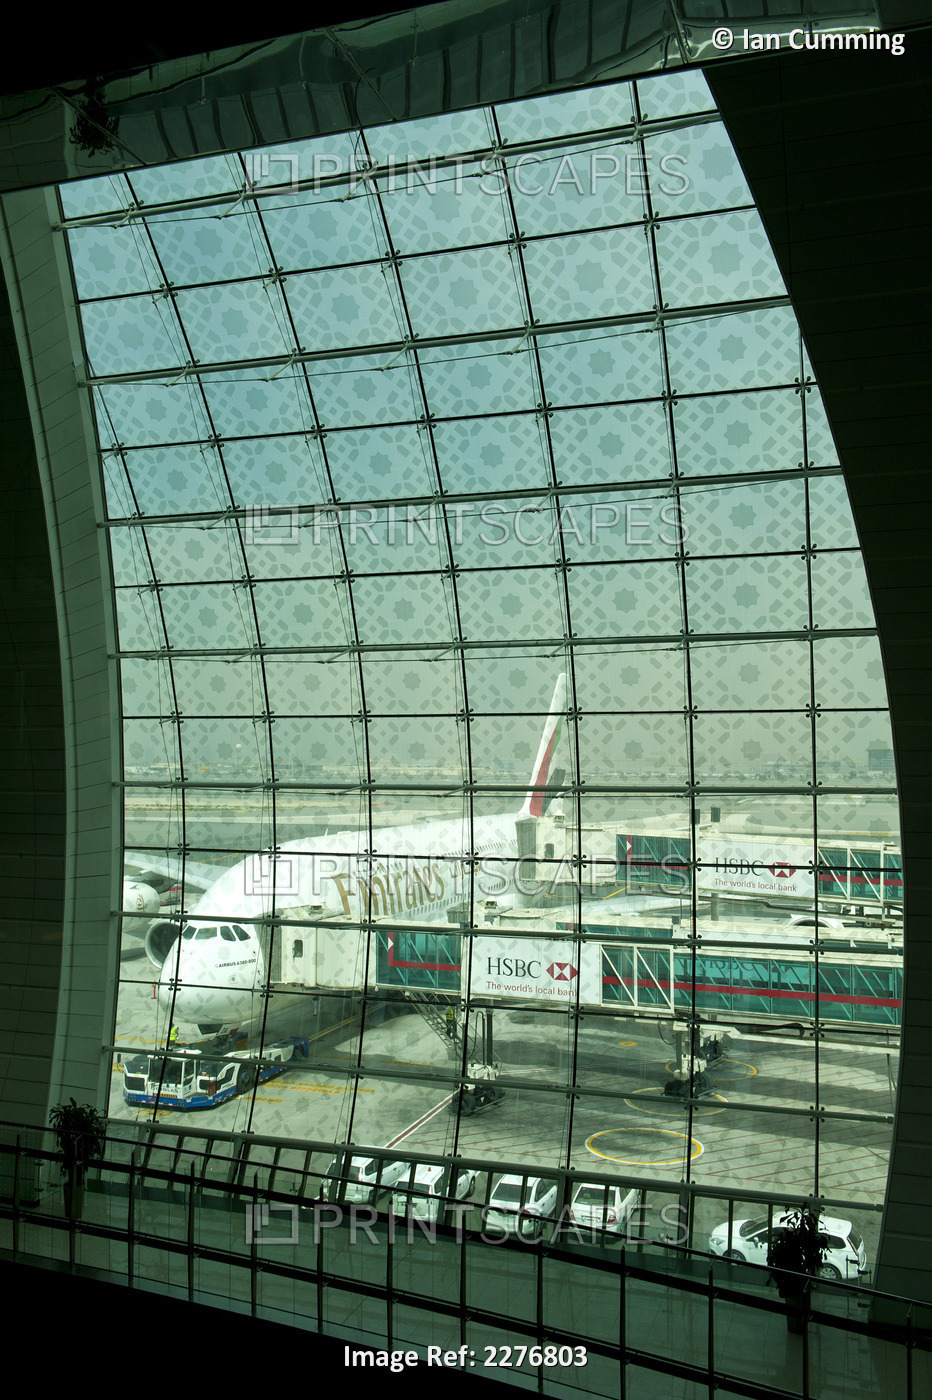 Emirates Airbus A380 At Dubai International Airport; Dubai, United Arab Emirates